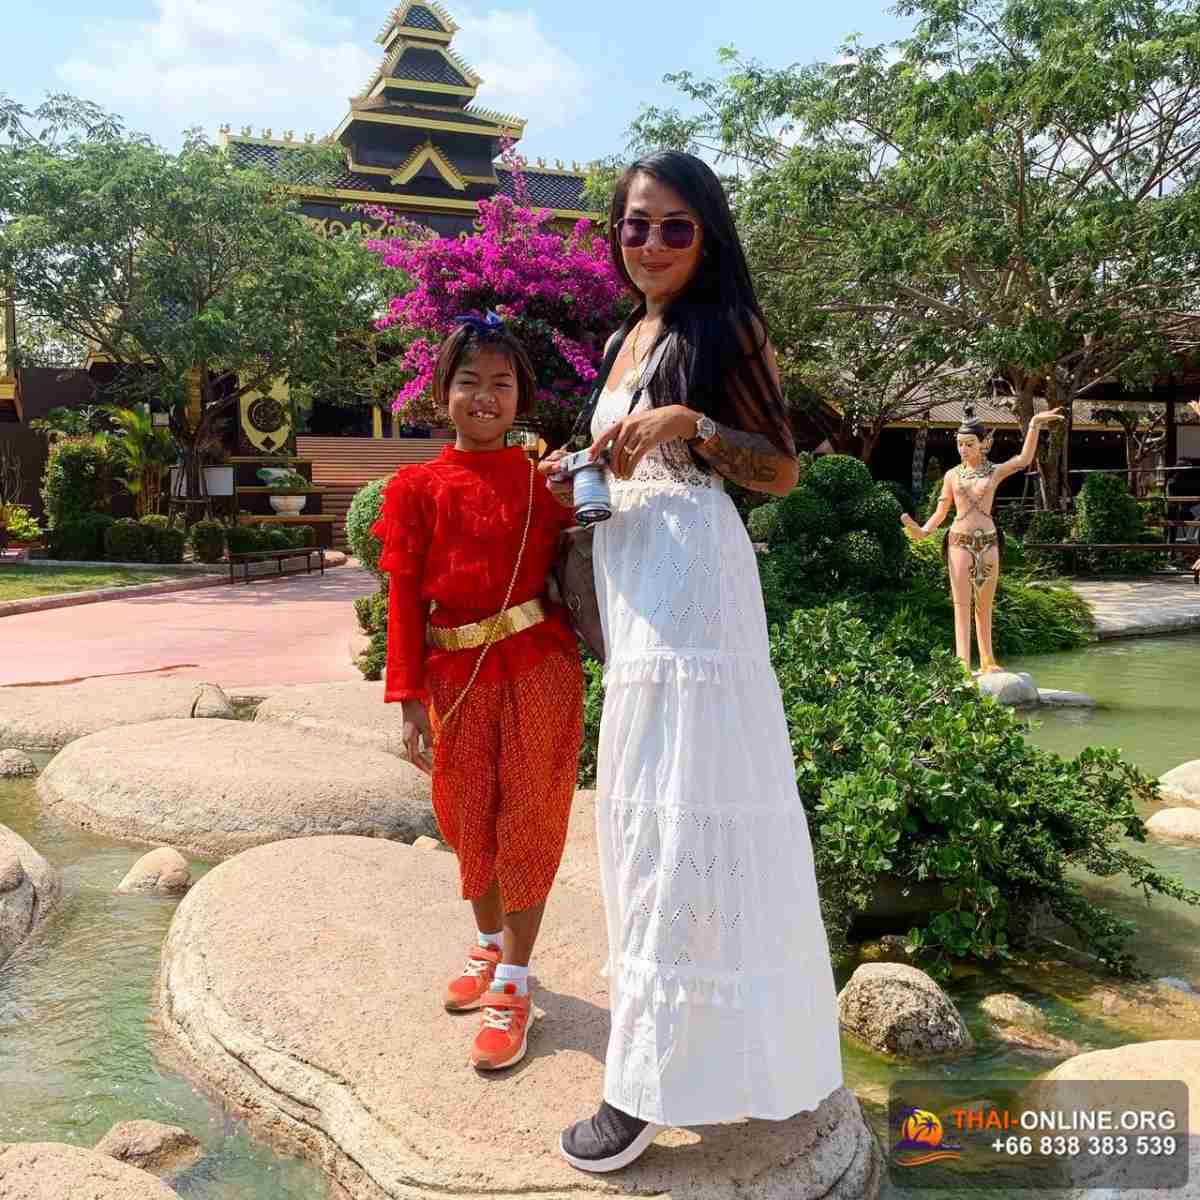 Open Thai турпоездка в Паттайе - фотоальбом Thai-Online 42